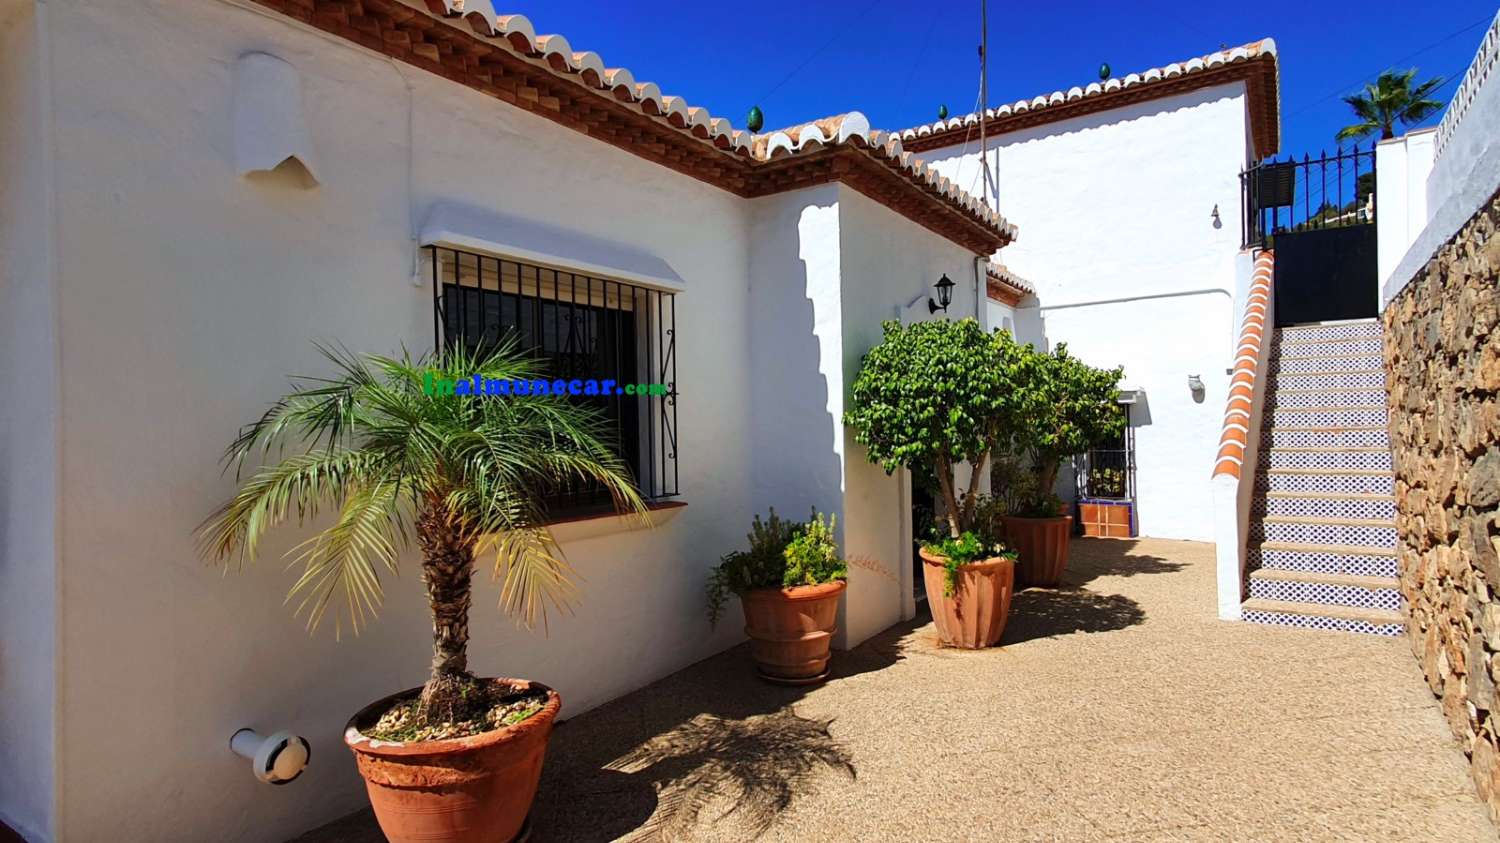 Villa till salu i Almuñécar med underbar havsutsikt, trädgård och garage – nära stranden och restauranger